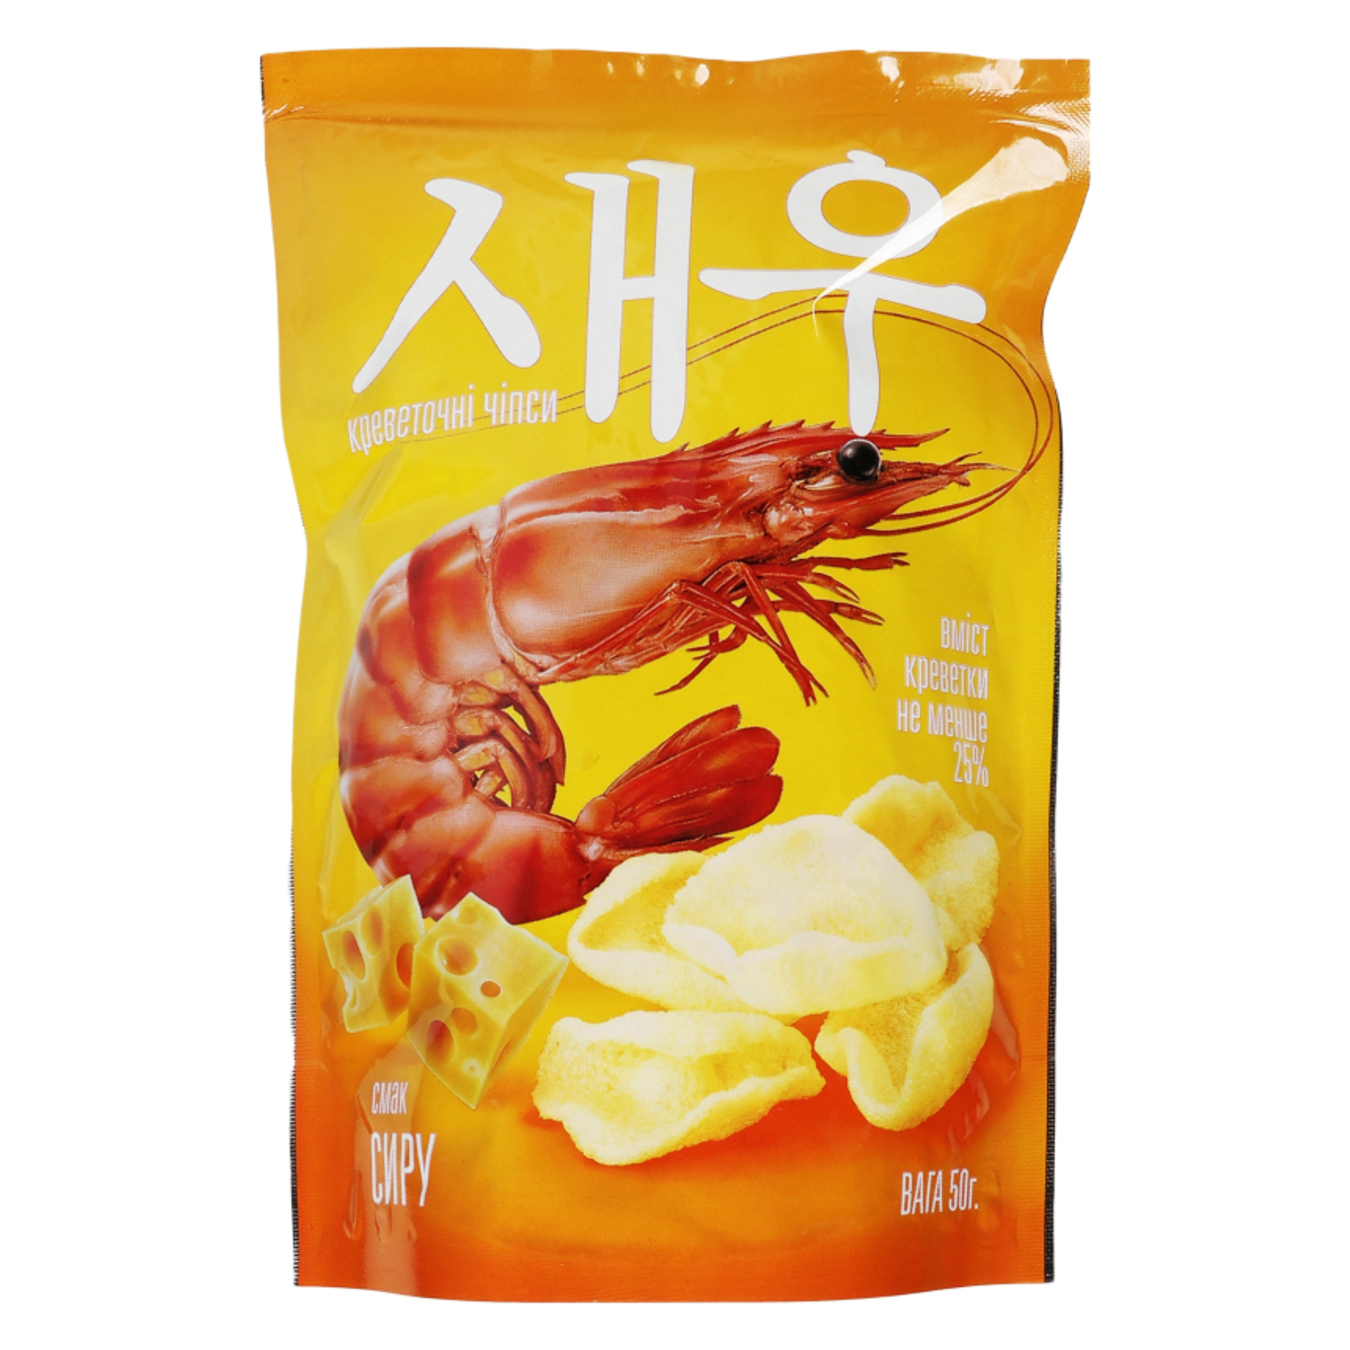 Shrimp chips Shrips taste of cheese 50g 3